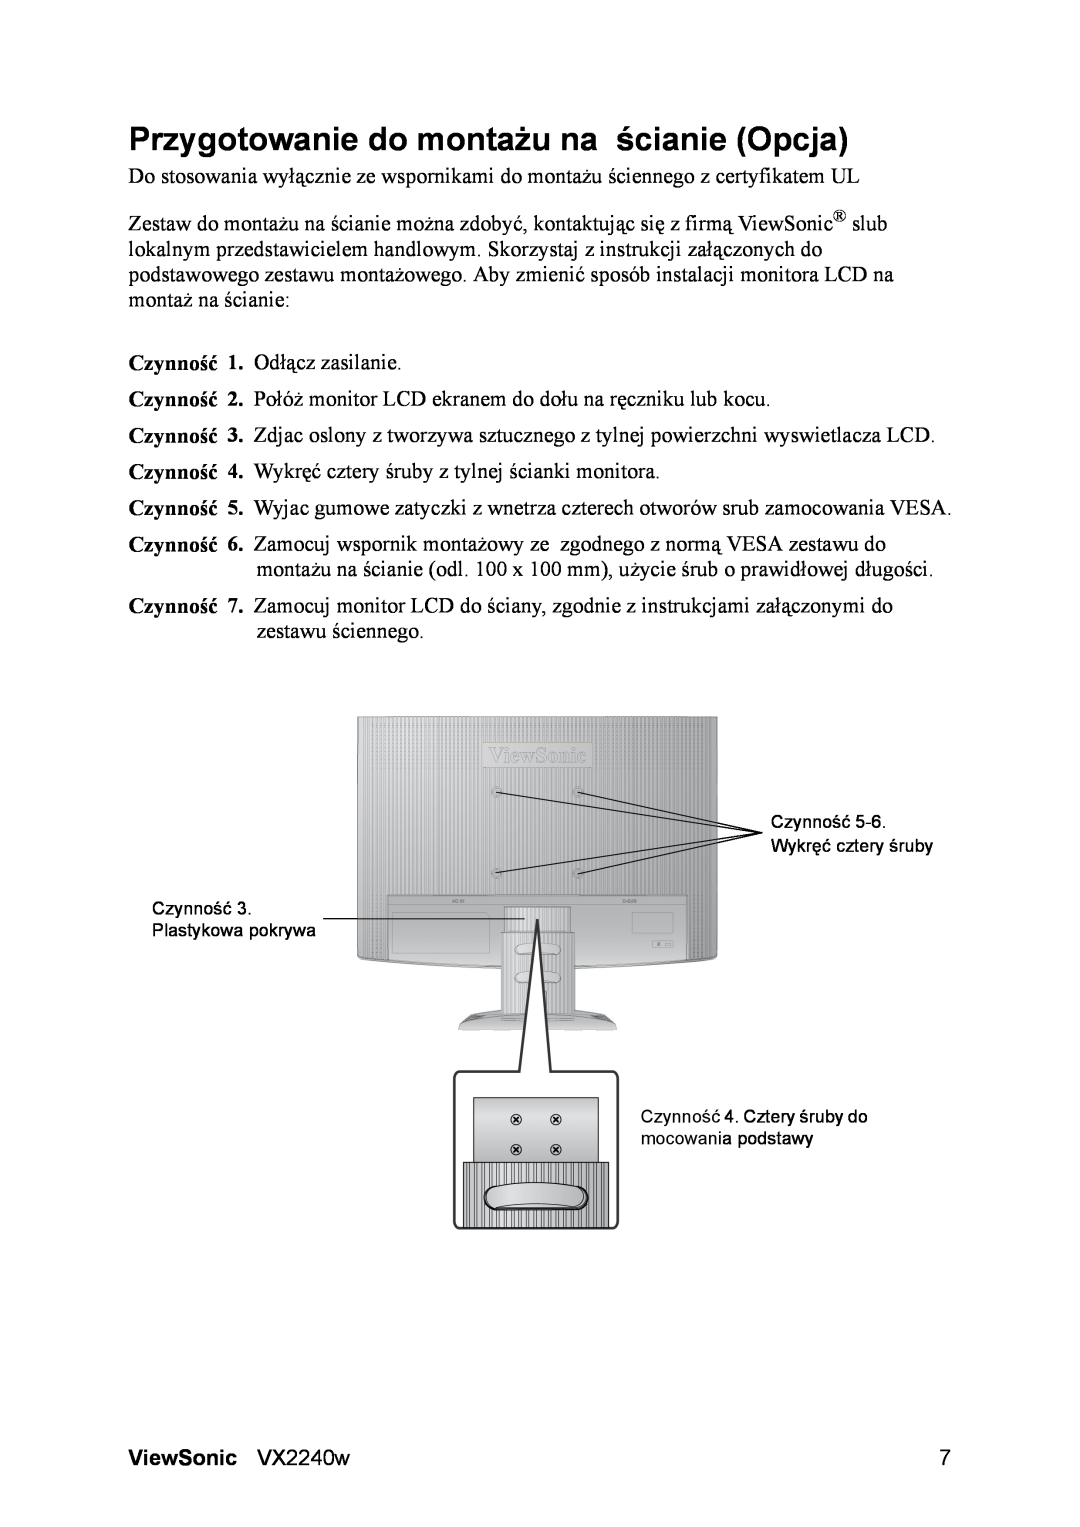 ViewSonic VS11985 manual Przygotowanie do montażu na ścianie Opcja, ViewSonic VX2240w 